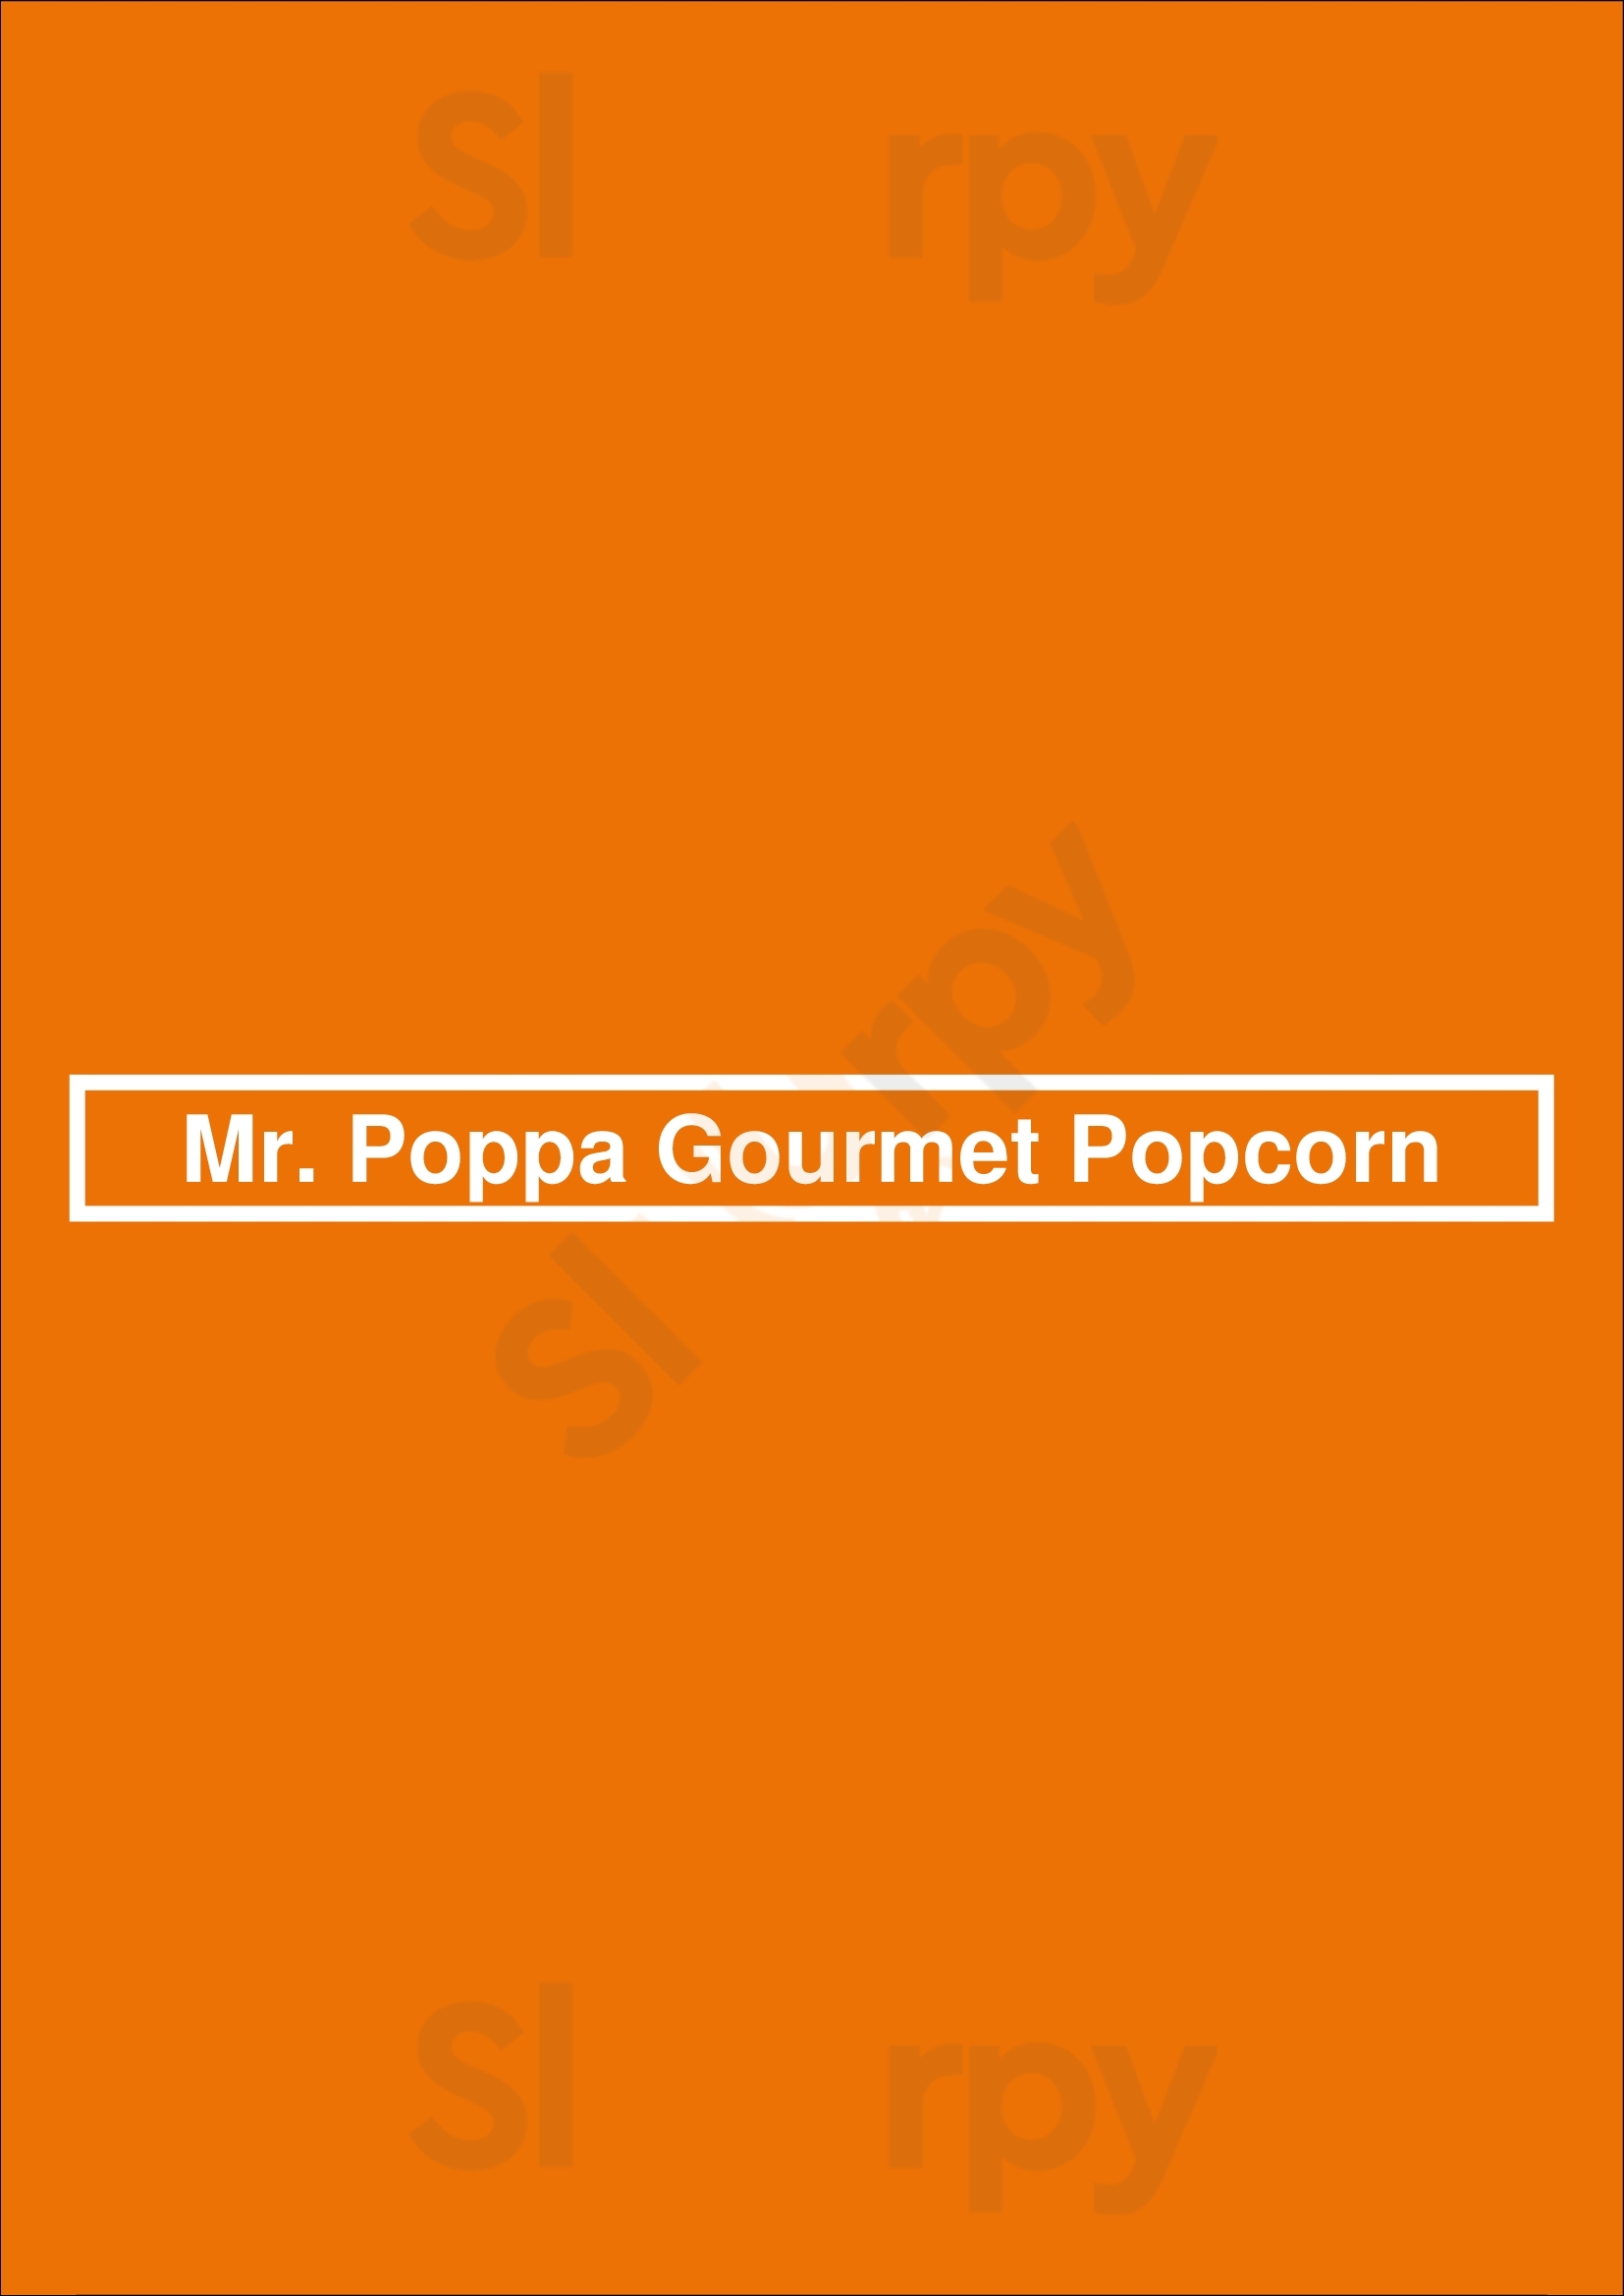 Mr. Poppa Gourmet Popcorn Kitchen Chicago Menu - 1